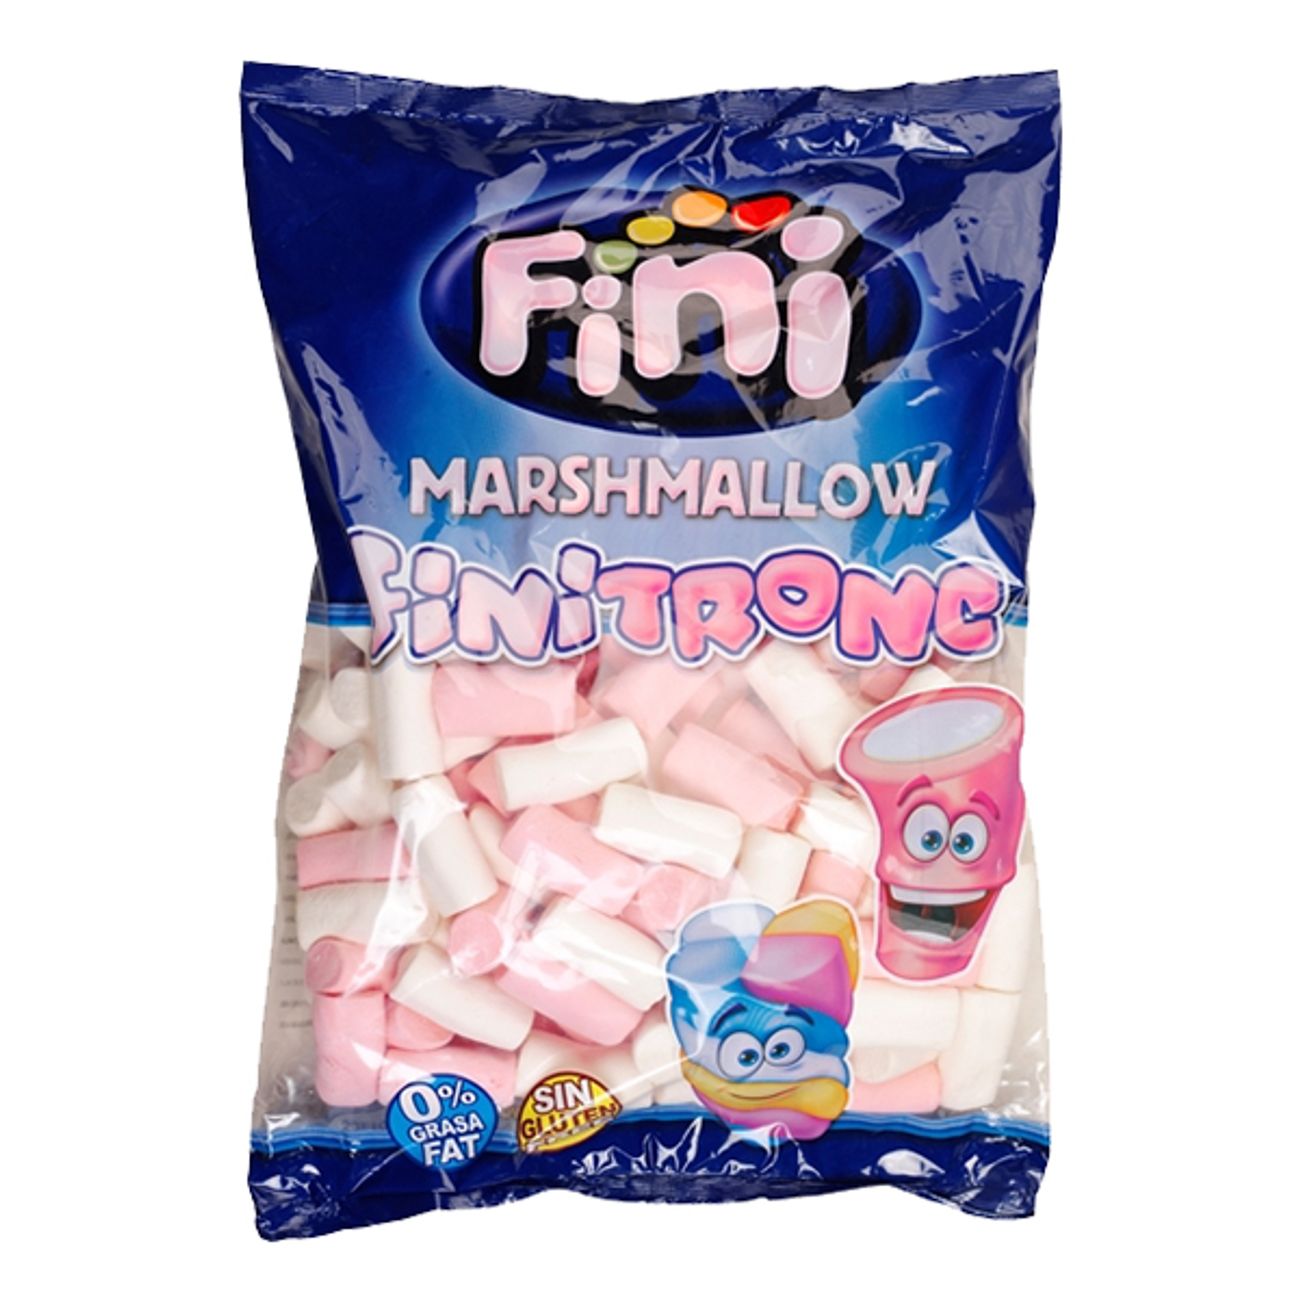 marshmallow-puffar-2